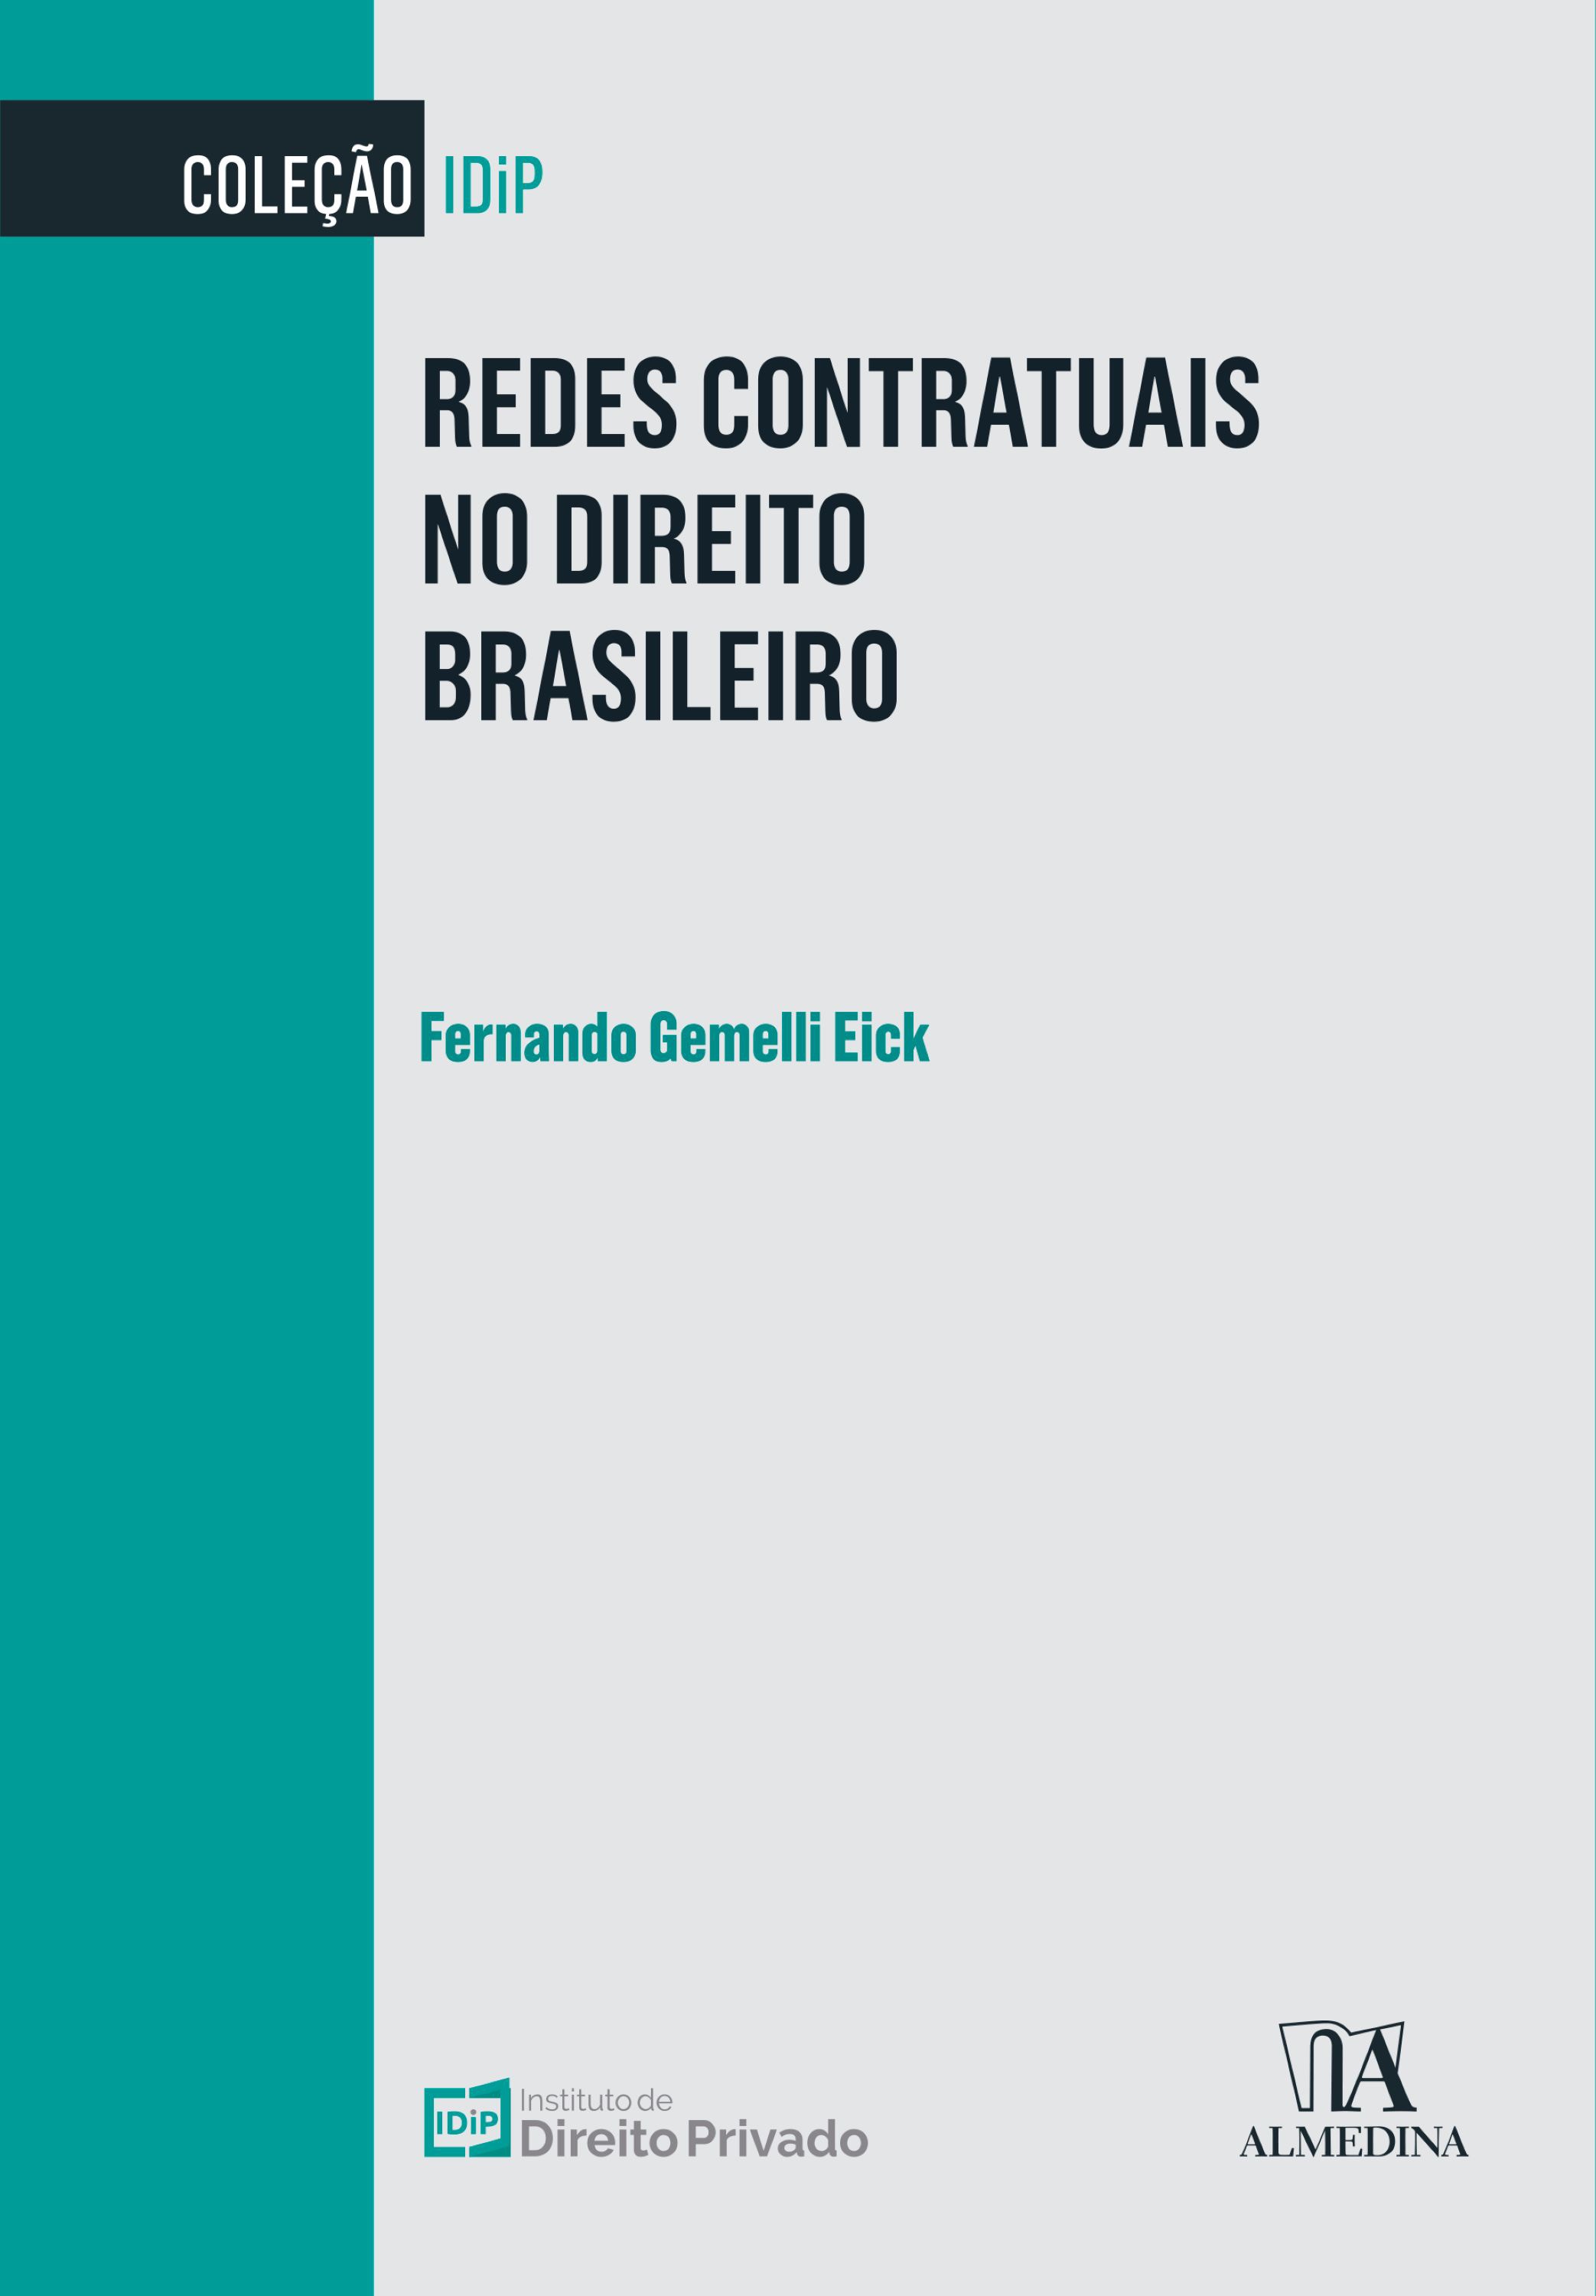 Redes Contratuais no Direito Brasileiro